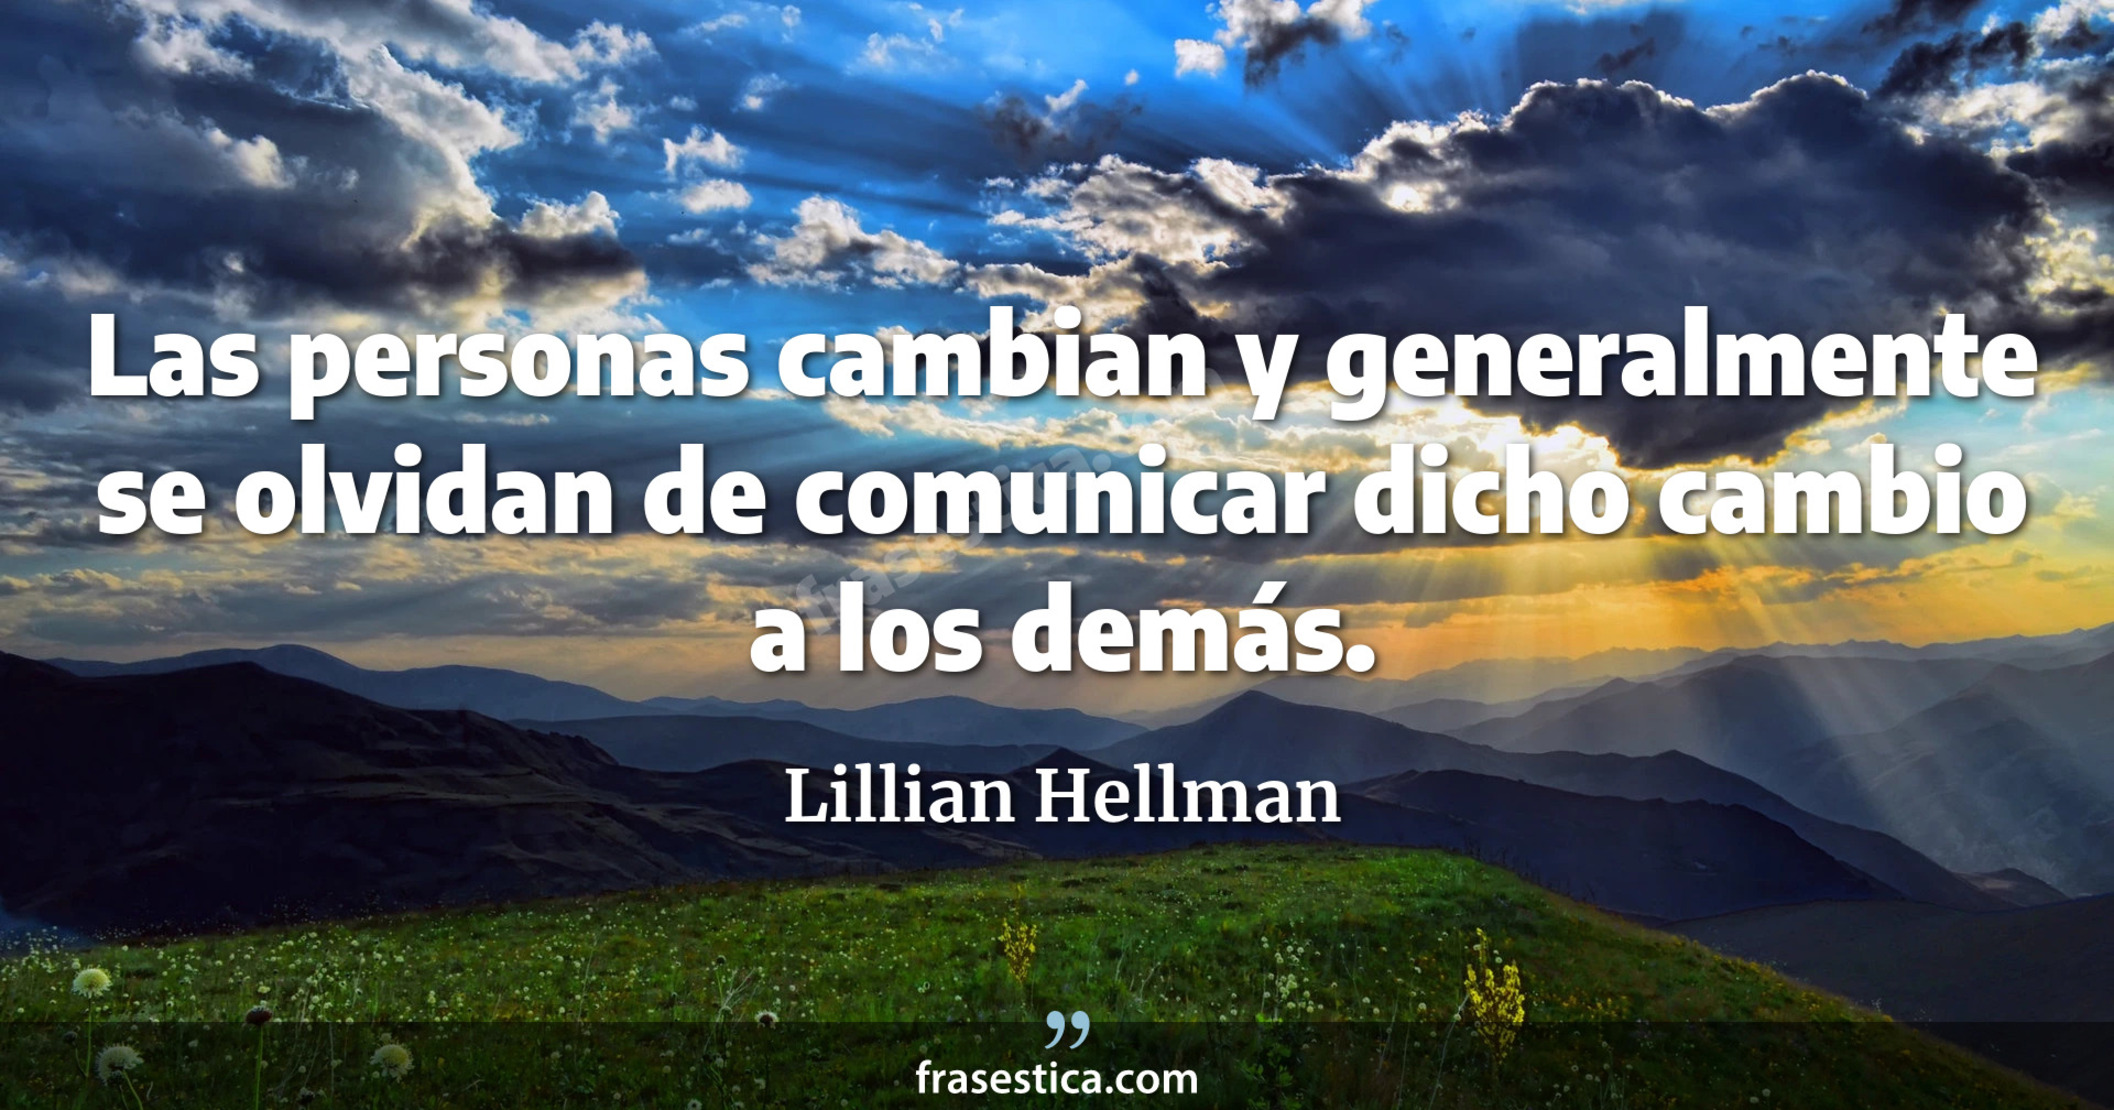 Las personas cambian y generalmente se olvidan de comunicar dicho cambio a los demás. - Lillian Hellman